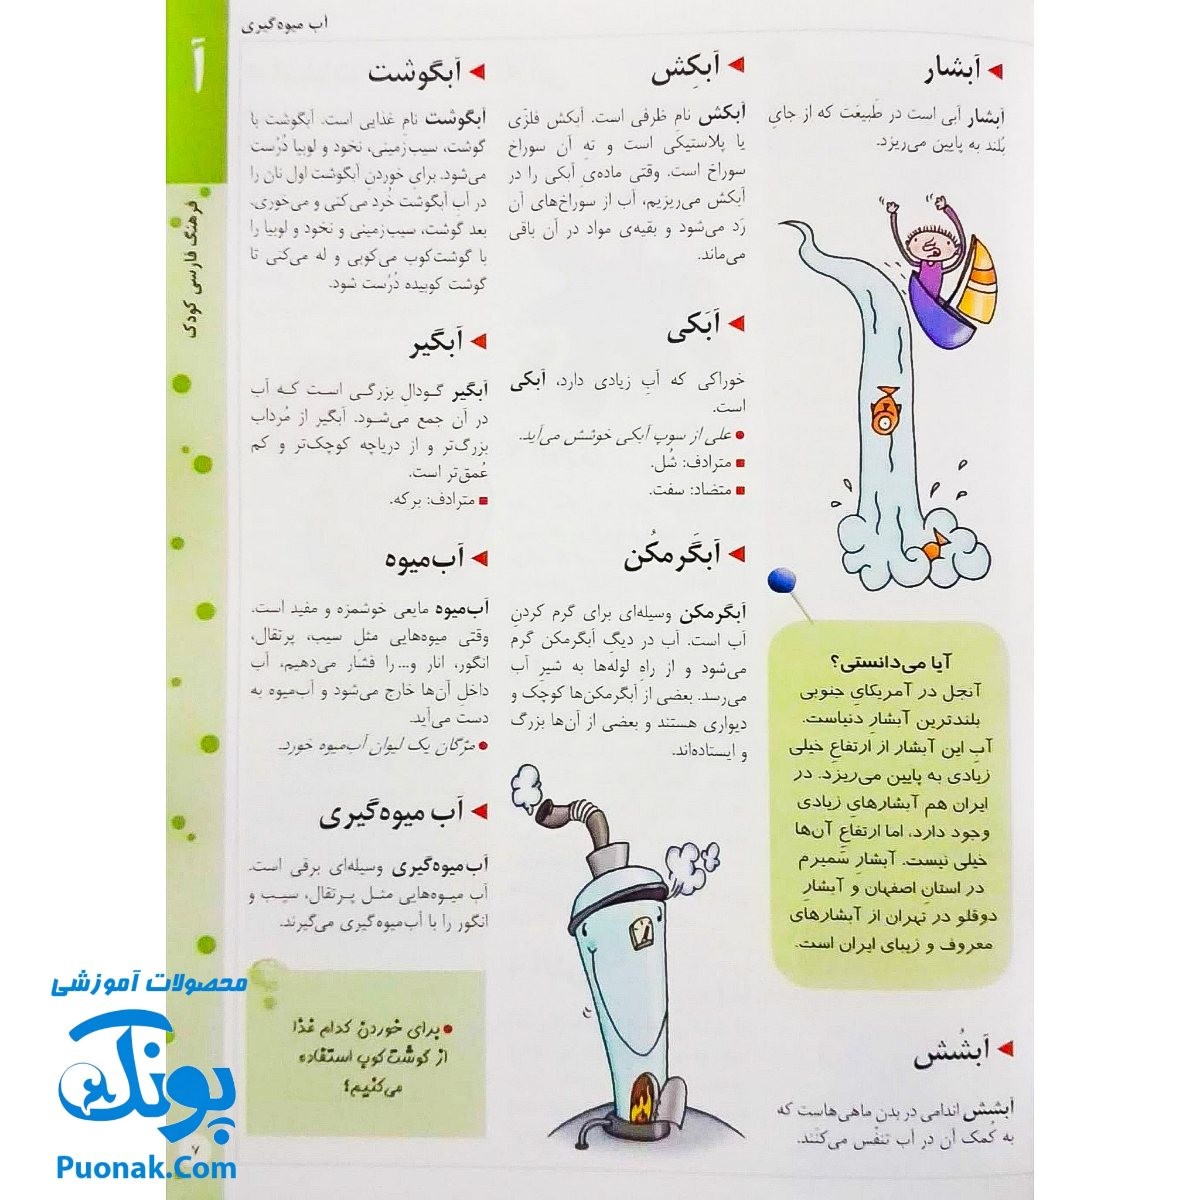 کتاب فرهنگ فارسی کودک (با بیش از ۱۴۰۰ کلمه و ۴۰۲ تصویر رنگی)